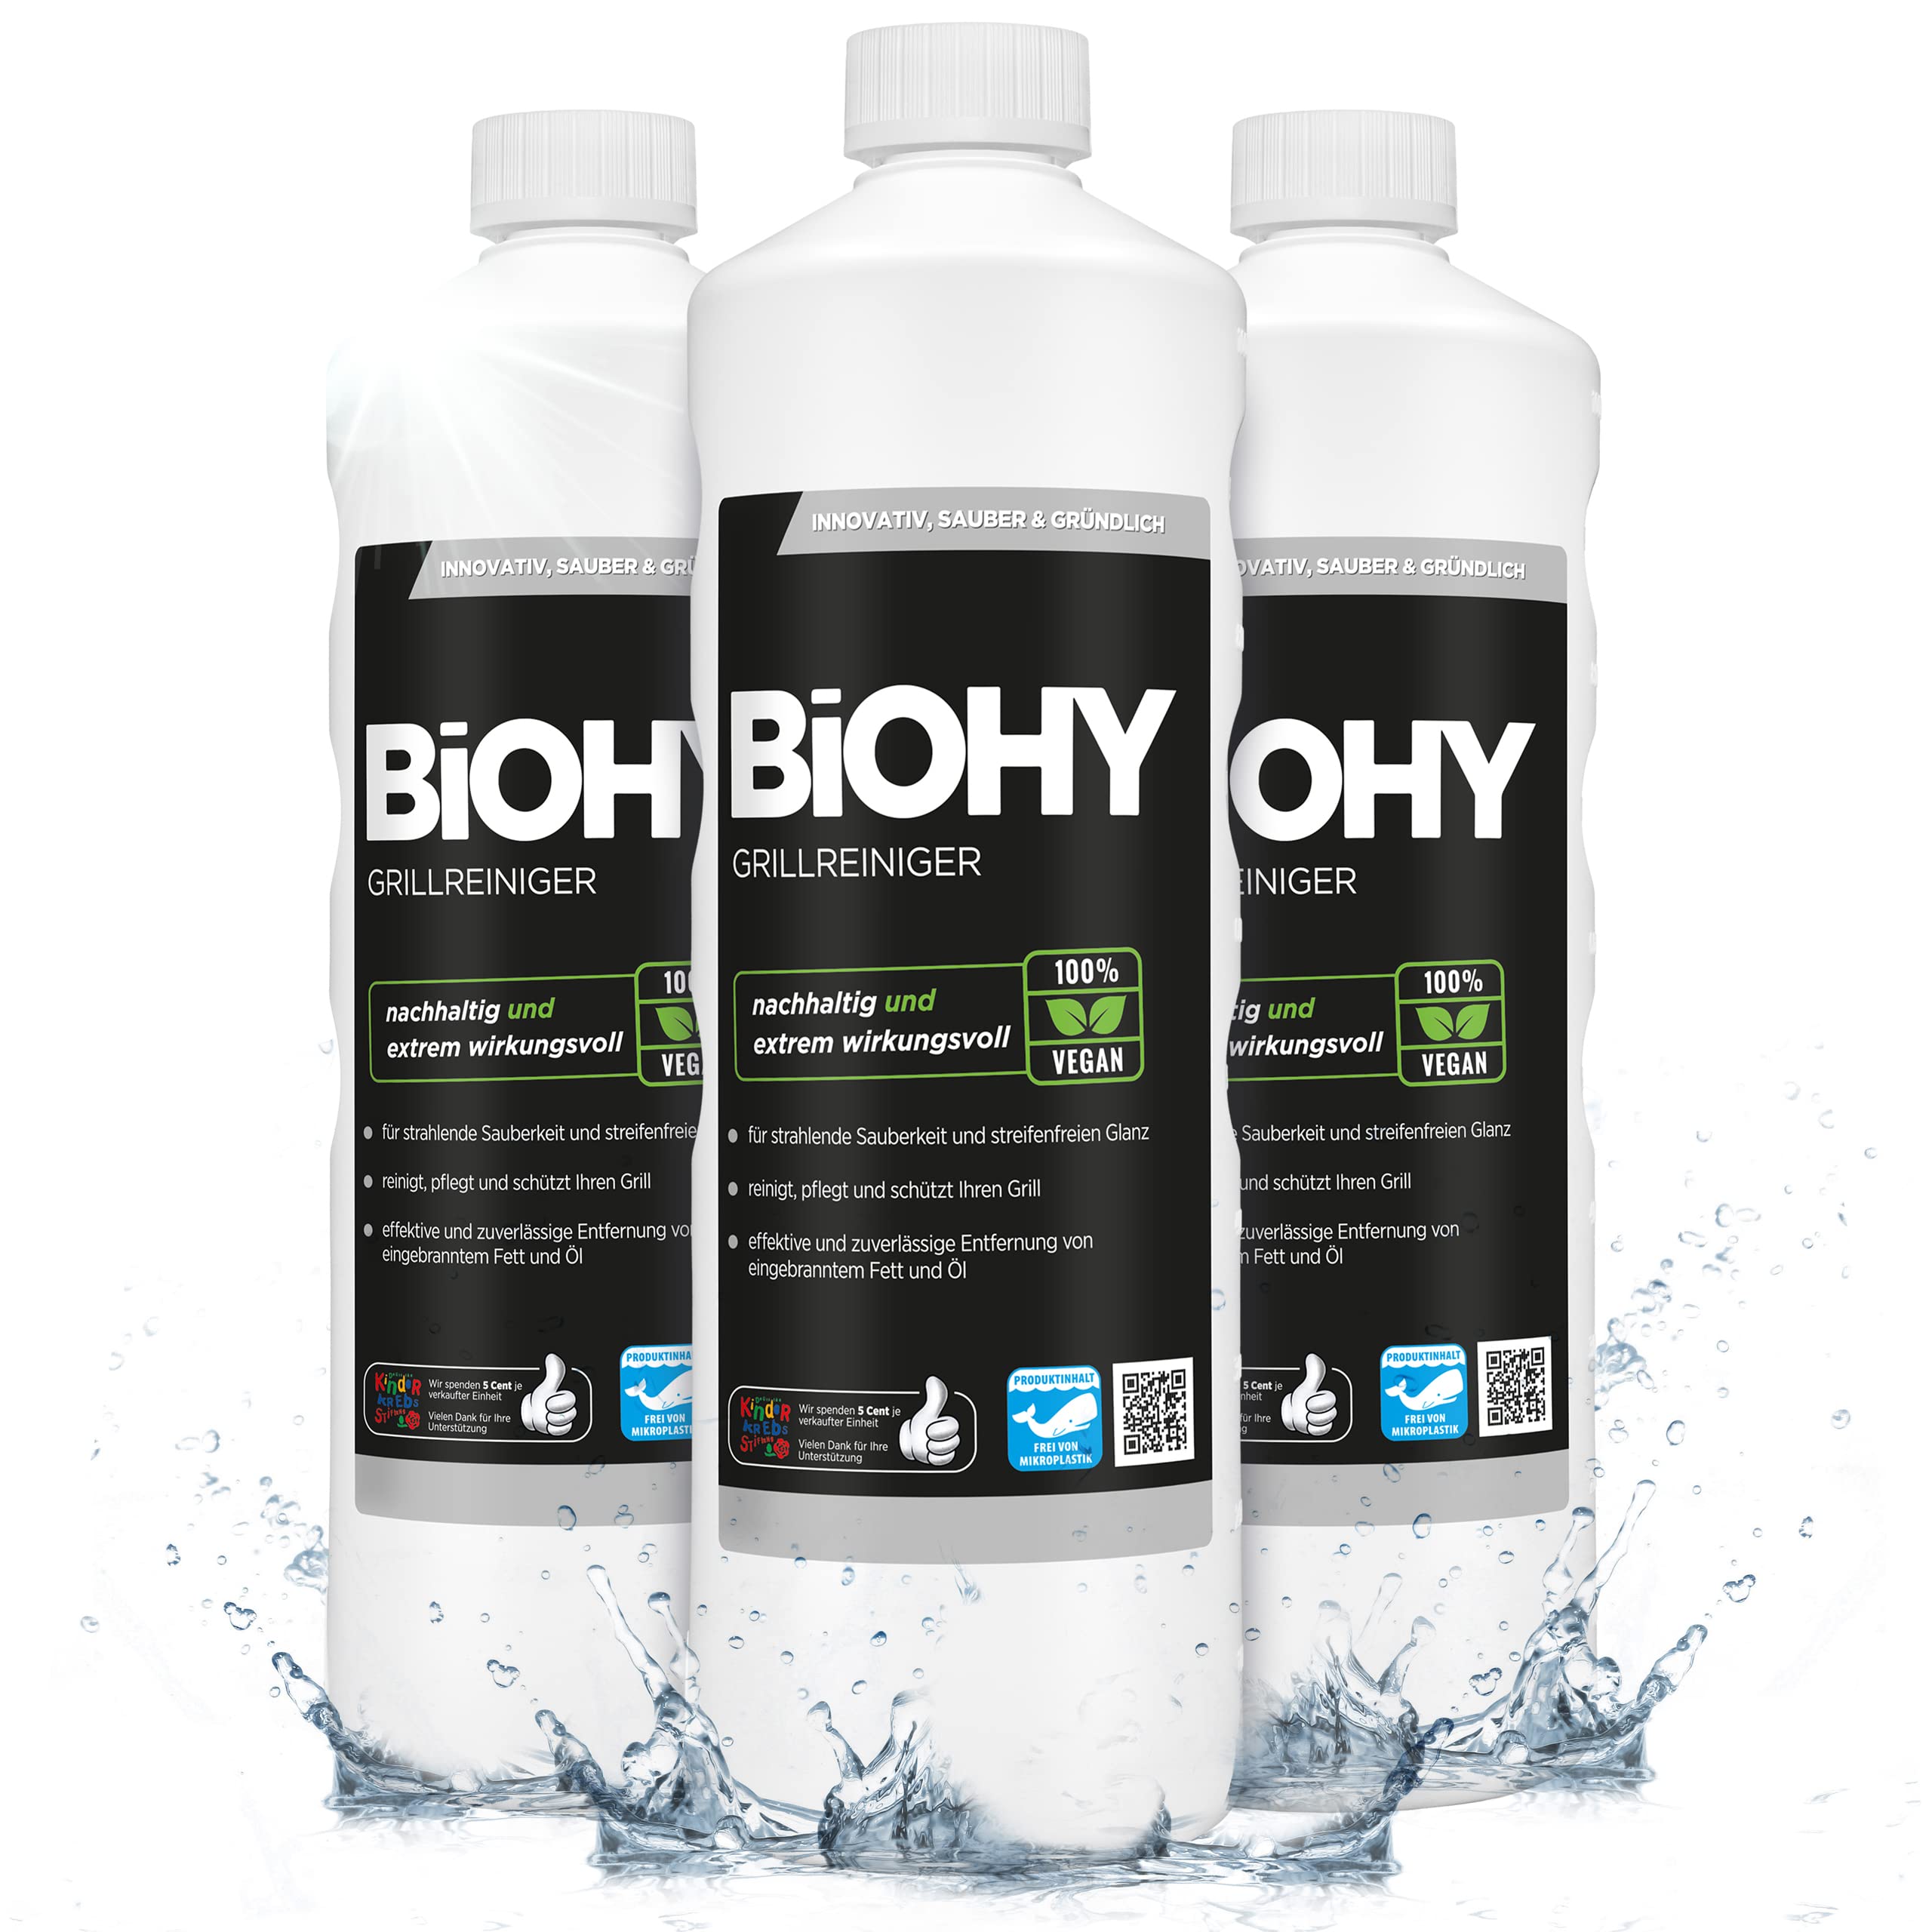 BiOHY Grillreiniger (3 x 1 Liter) | Reiniger für Holzkohle-, Gas- und Elektrogrill | Hocheffektiv gegen angebranntes Fett und Öl | Pflegt und schont das Material | Veganes Bio Konzentrat